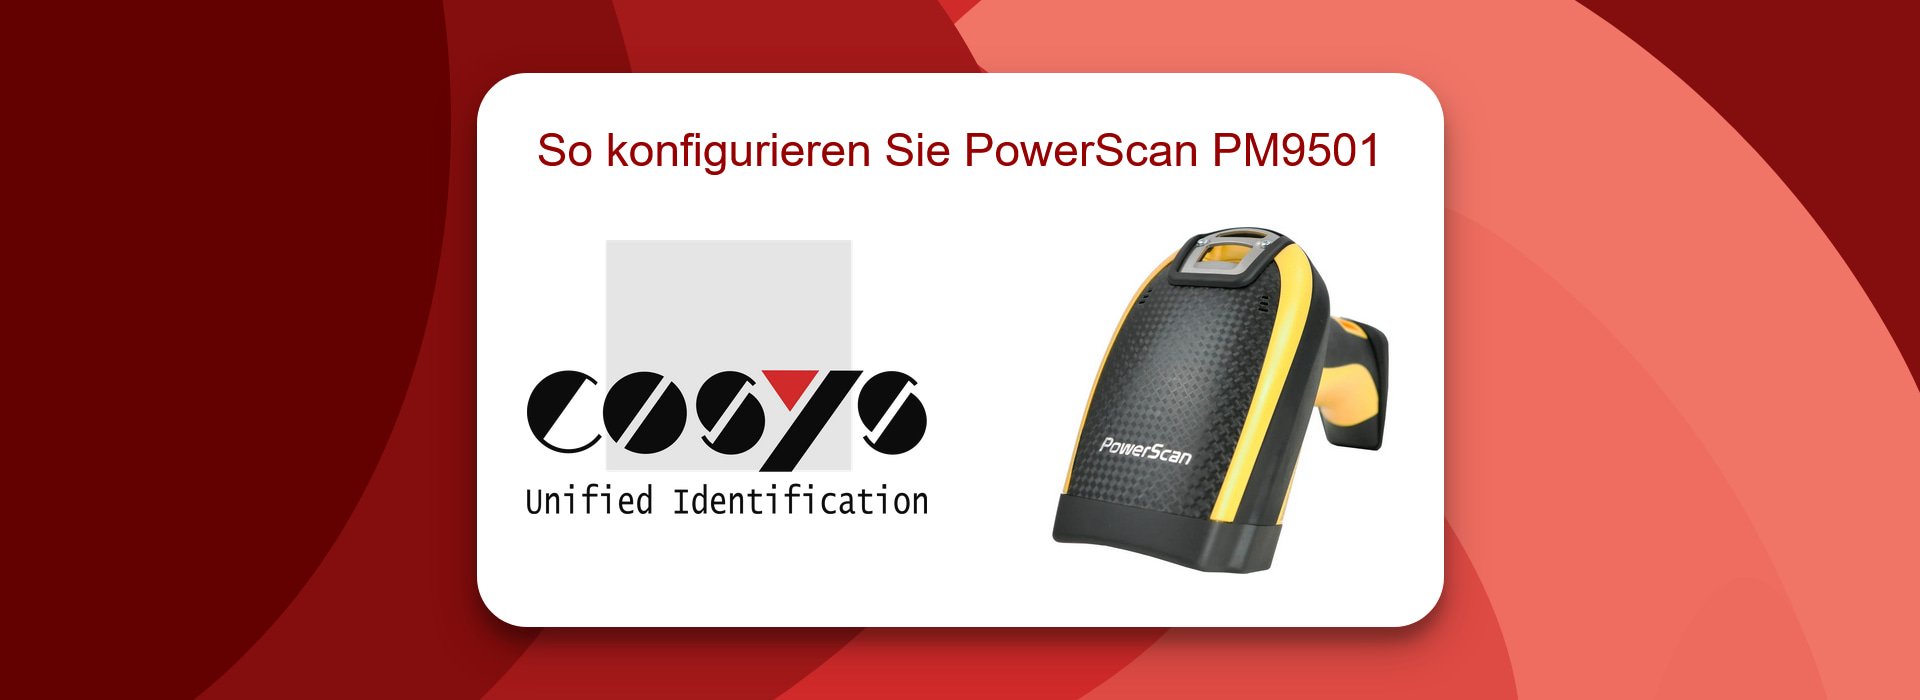 So konfigurieren Sie PowerScan PM9501